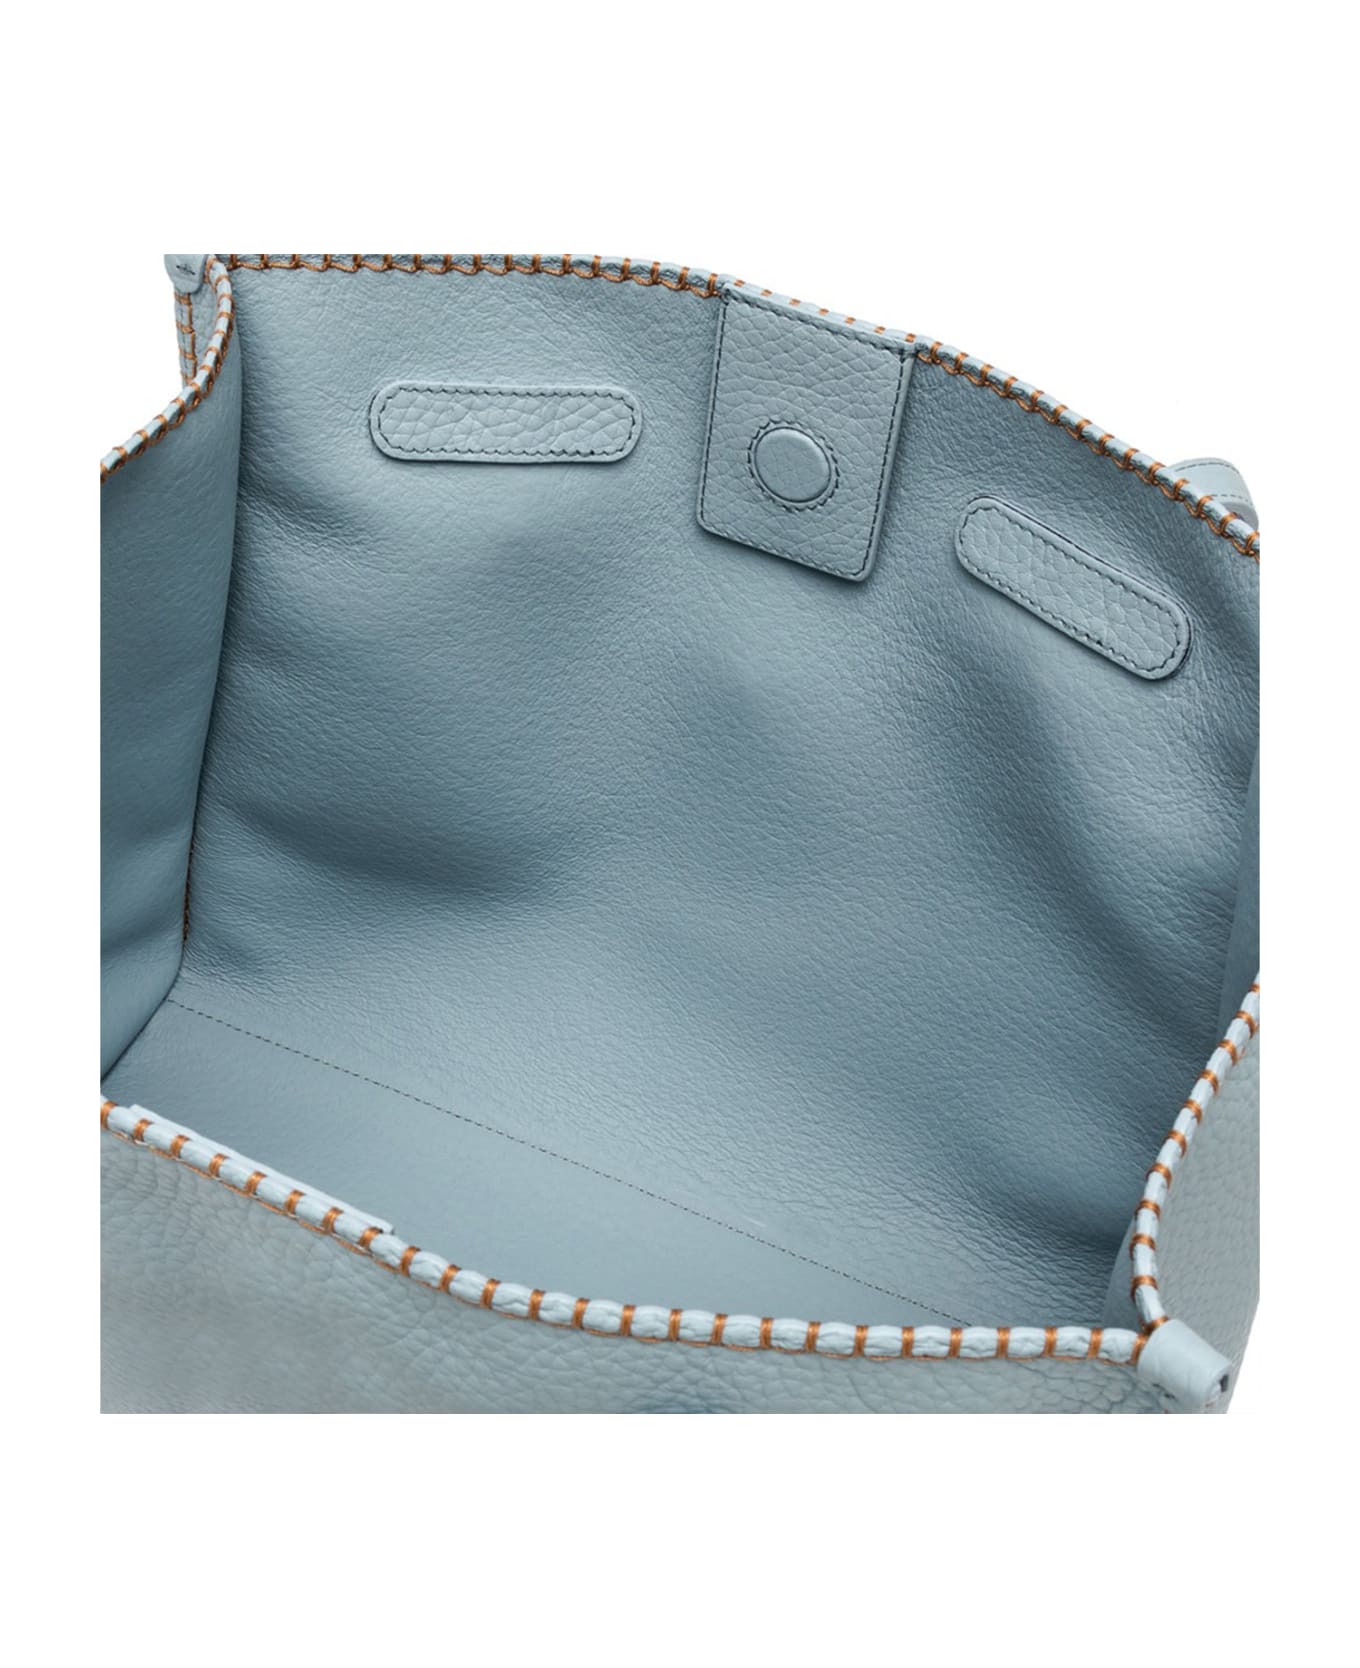 Gianni Chiarini Light Blue Marcella Shopping Bag In Bubble Leather - ARTICO